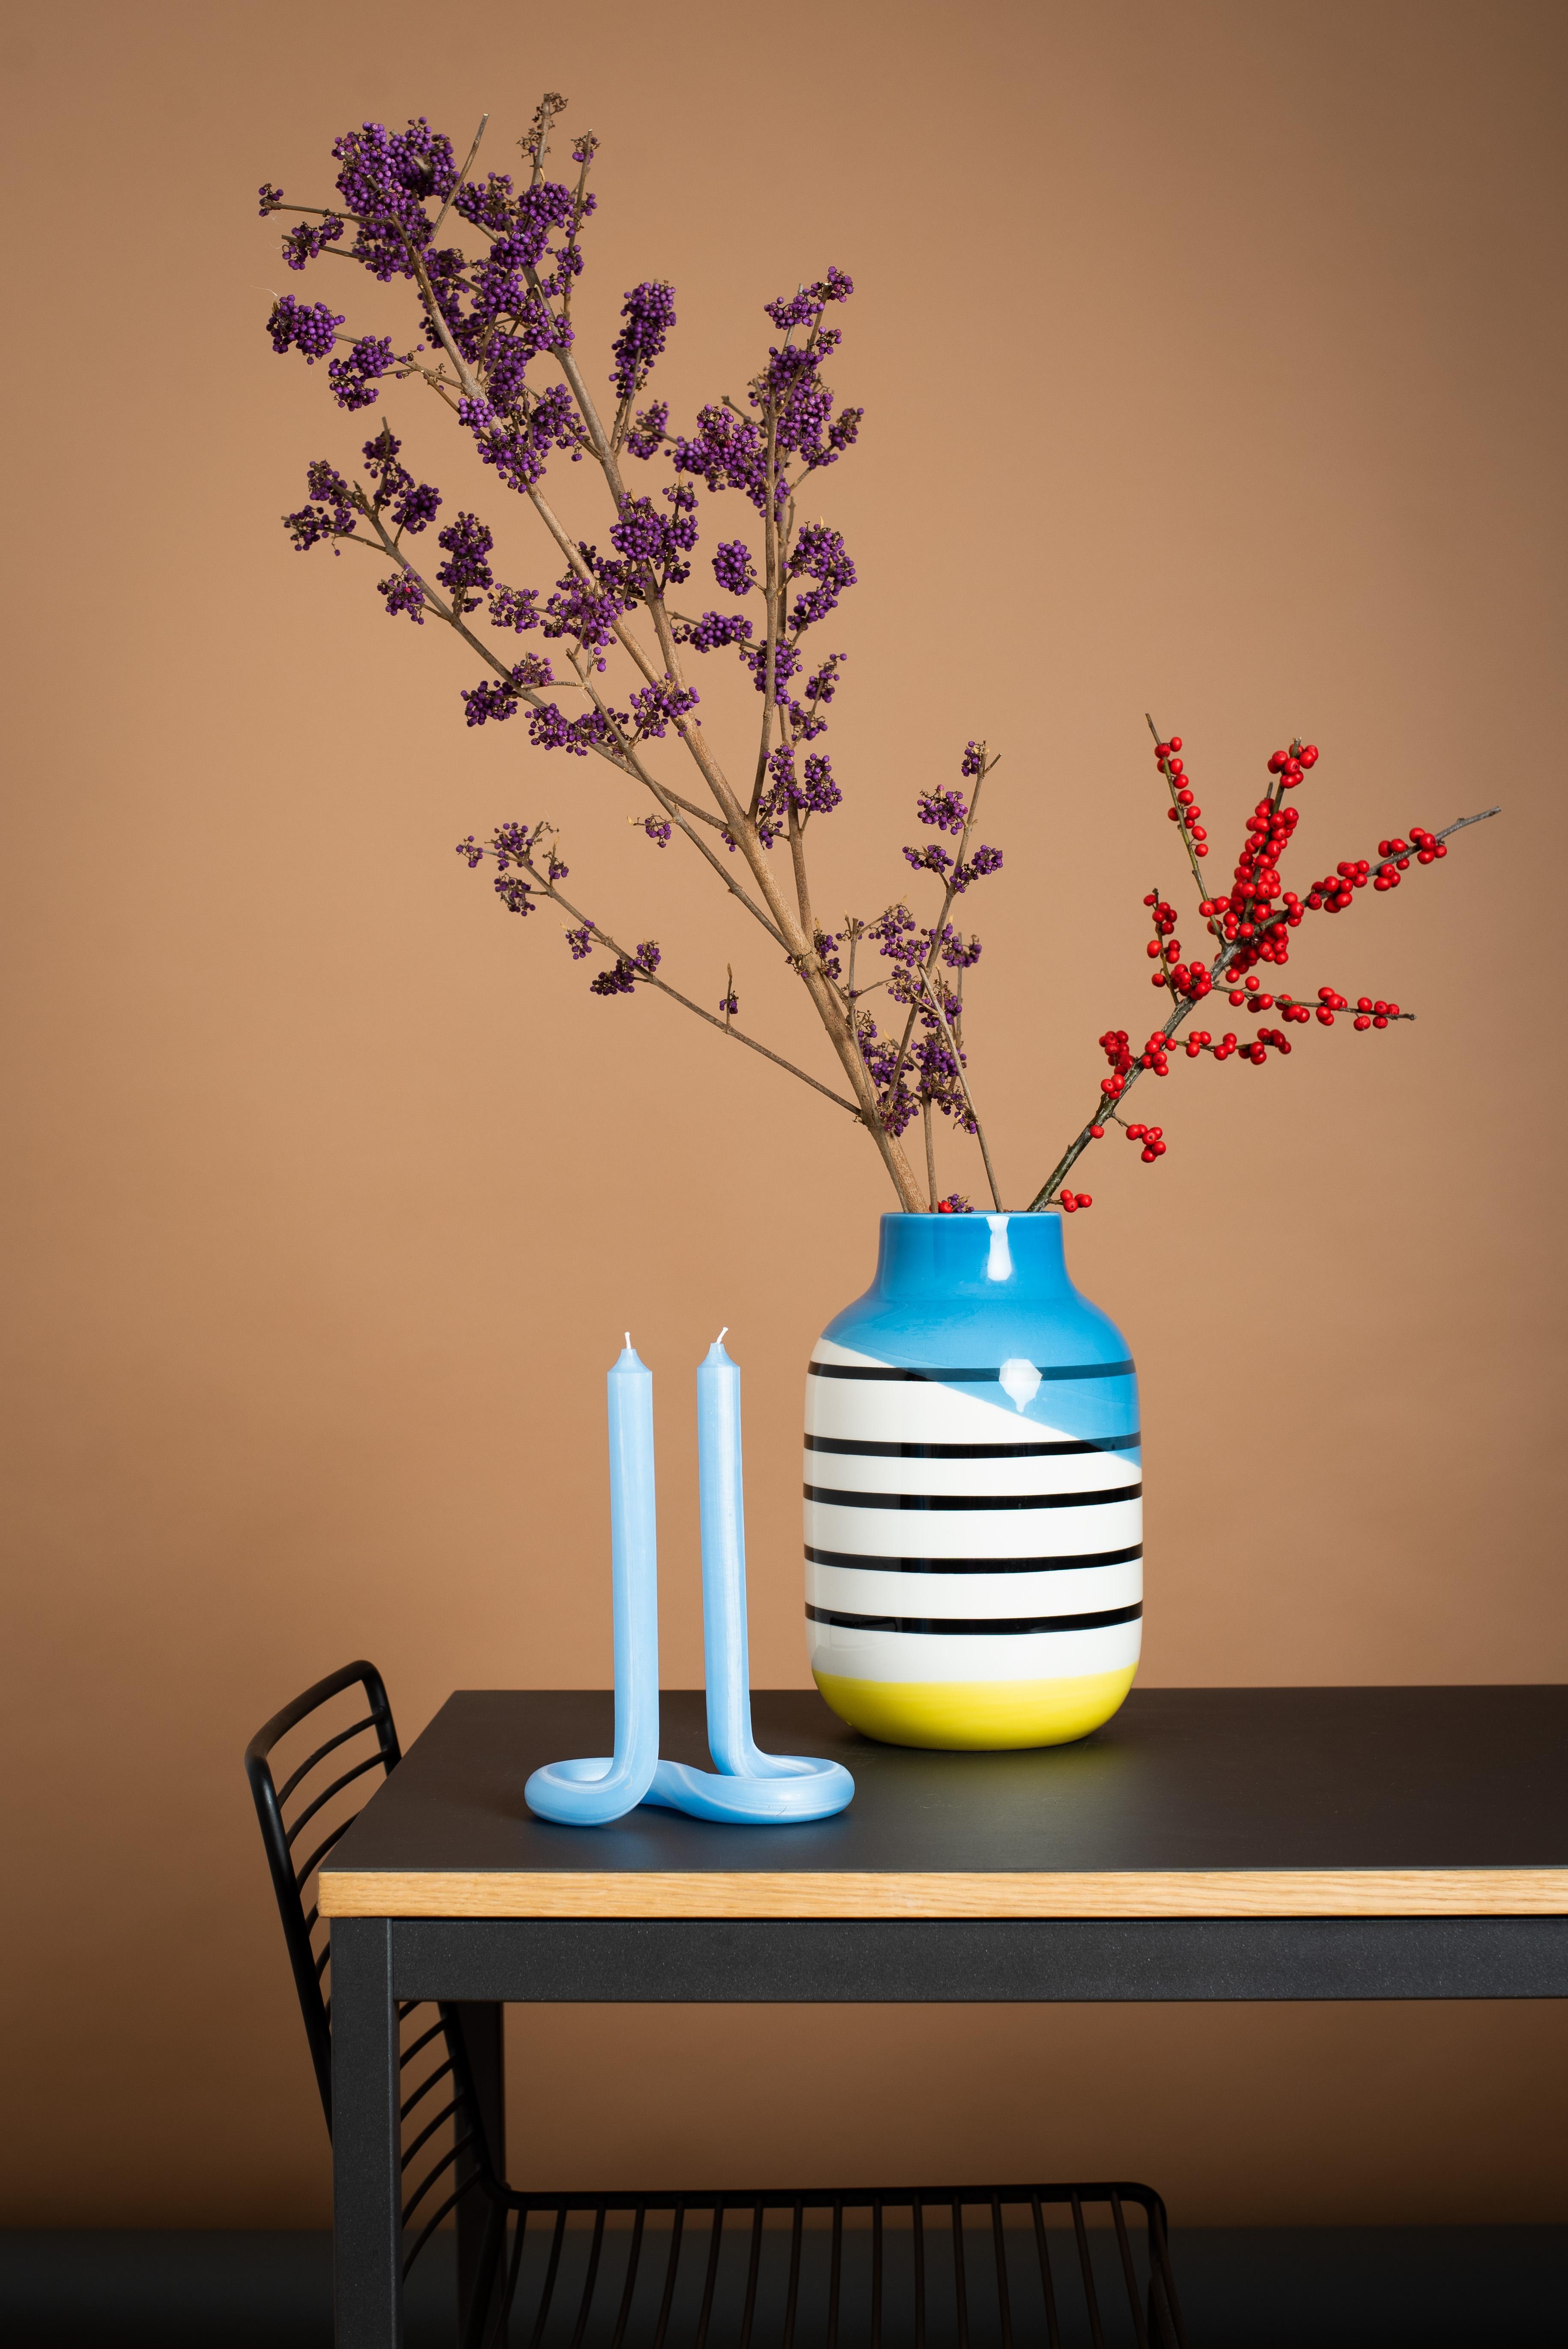 Farbenfrohen Mittwoch! #vase #deko #winterdeko #stillleben #stilllife #decoration #kerze #mystyle #colourfulstyle